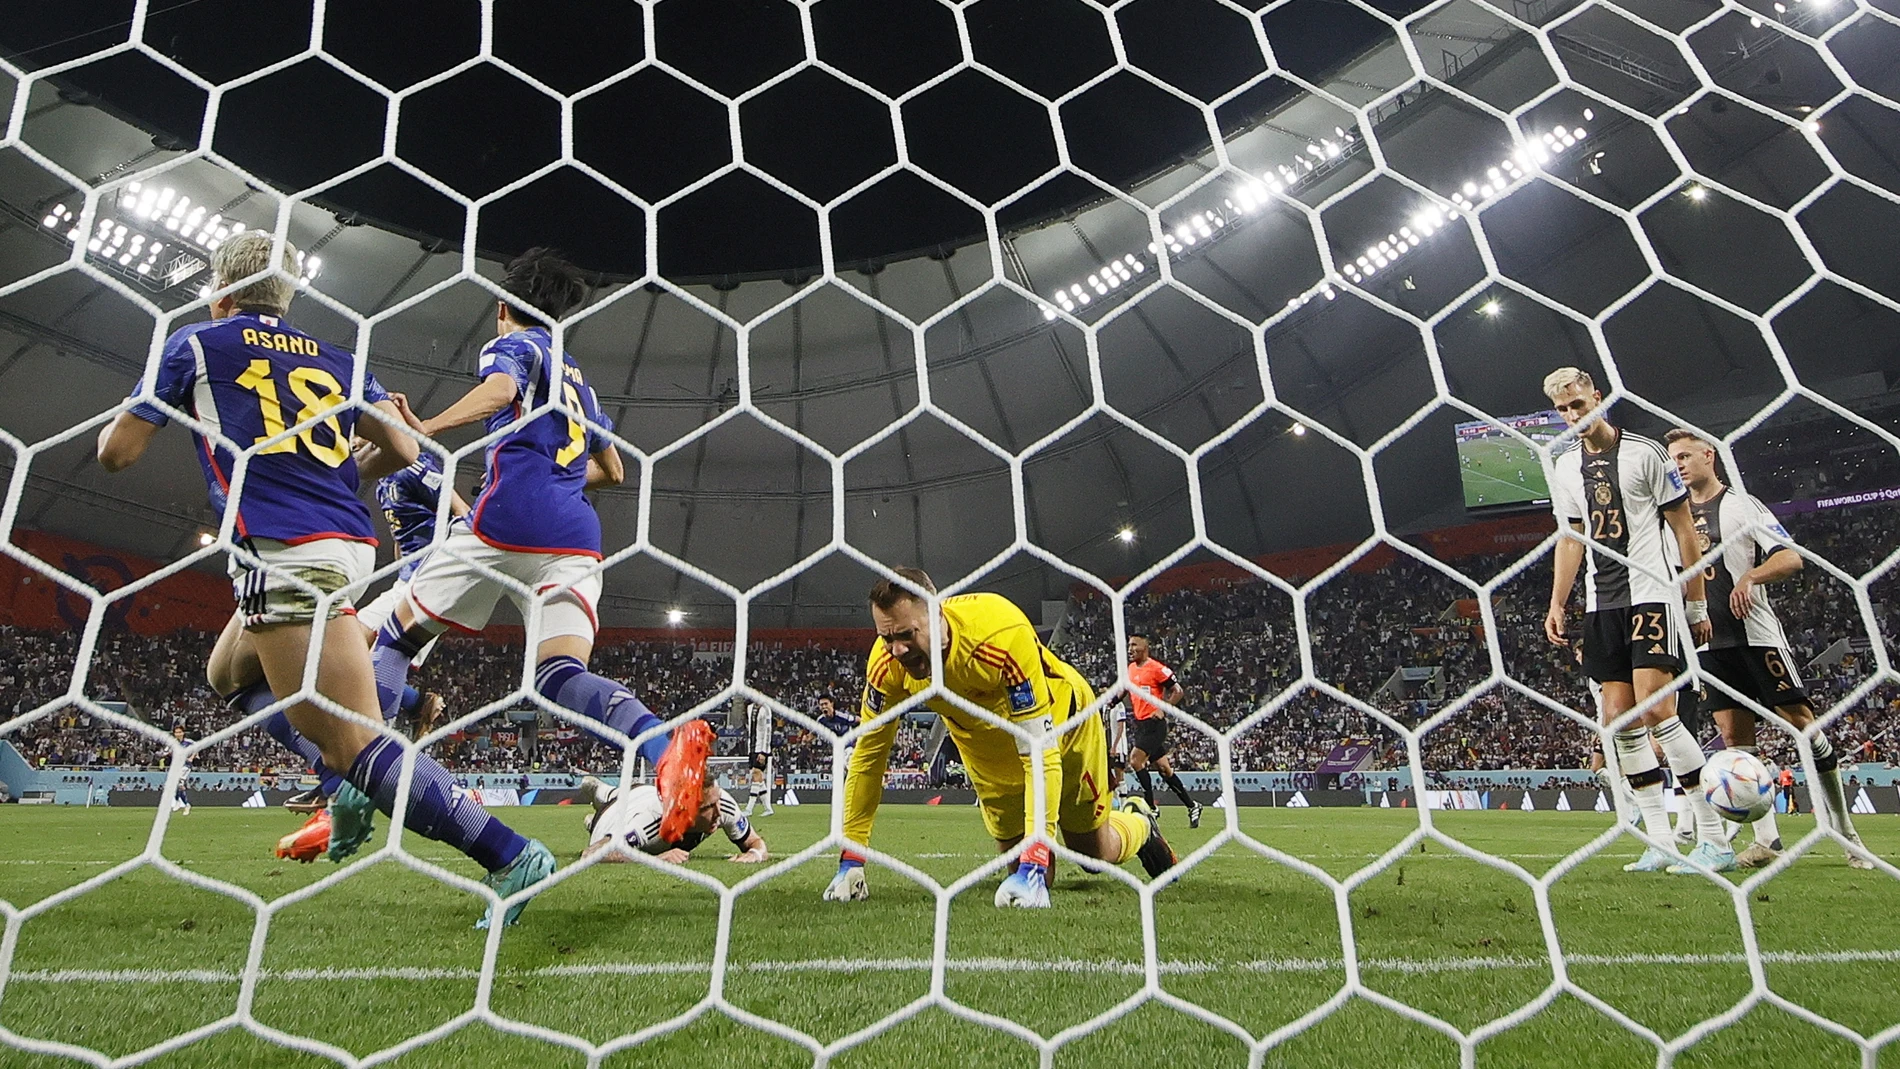 Neuer no pudo evitar que Japón ganase a Alemani en la segunda sorpresa del Mundial de Qatar 2022